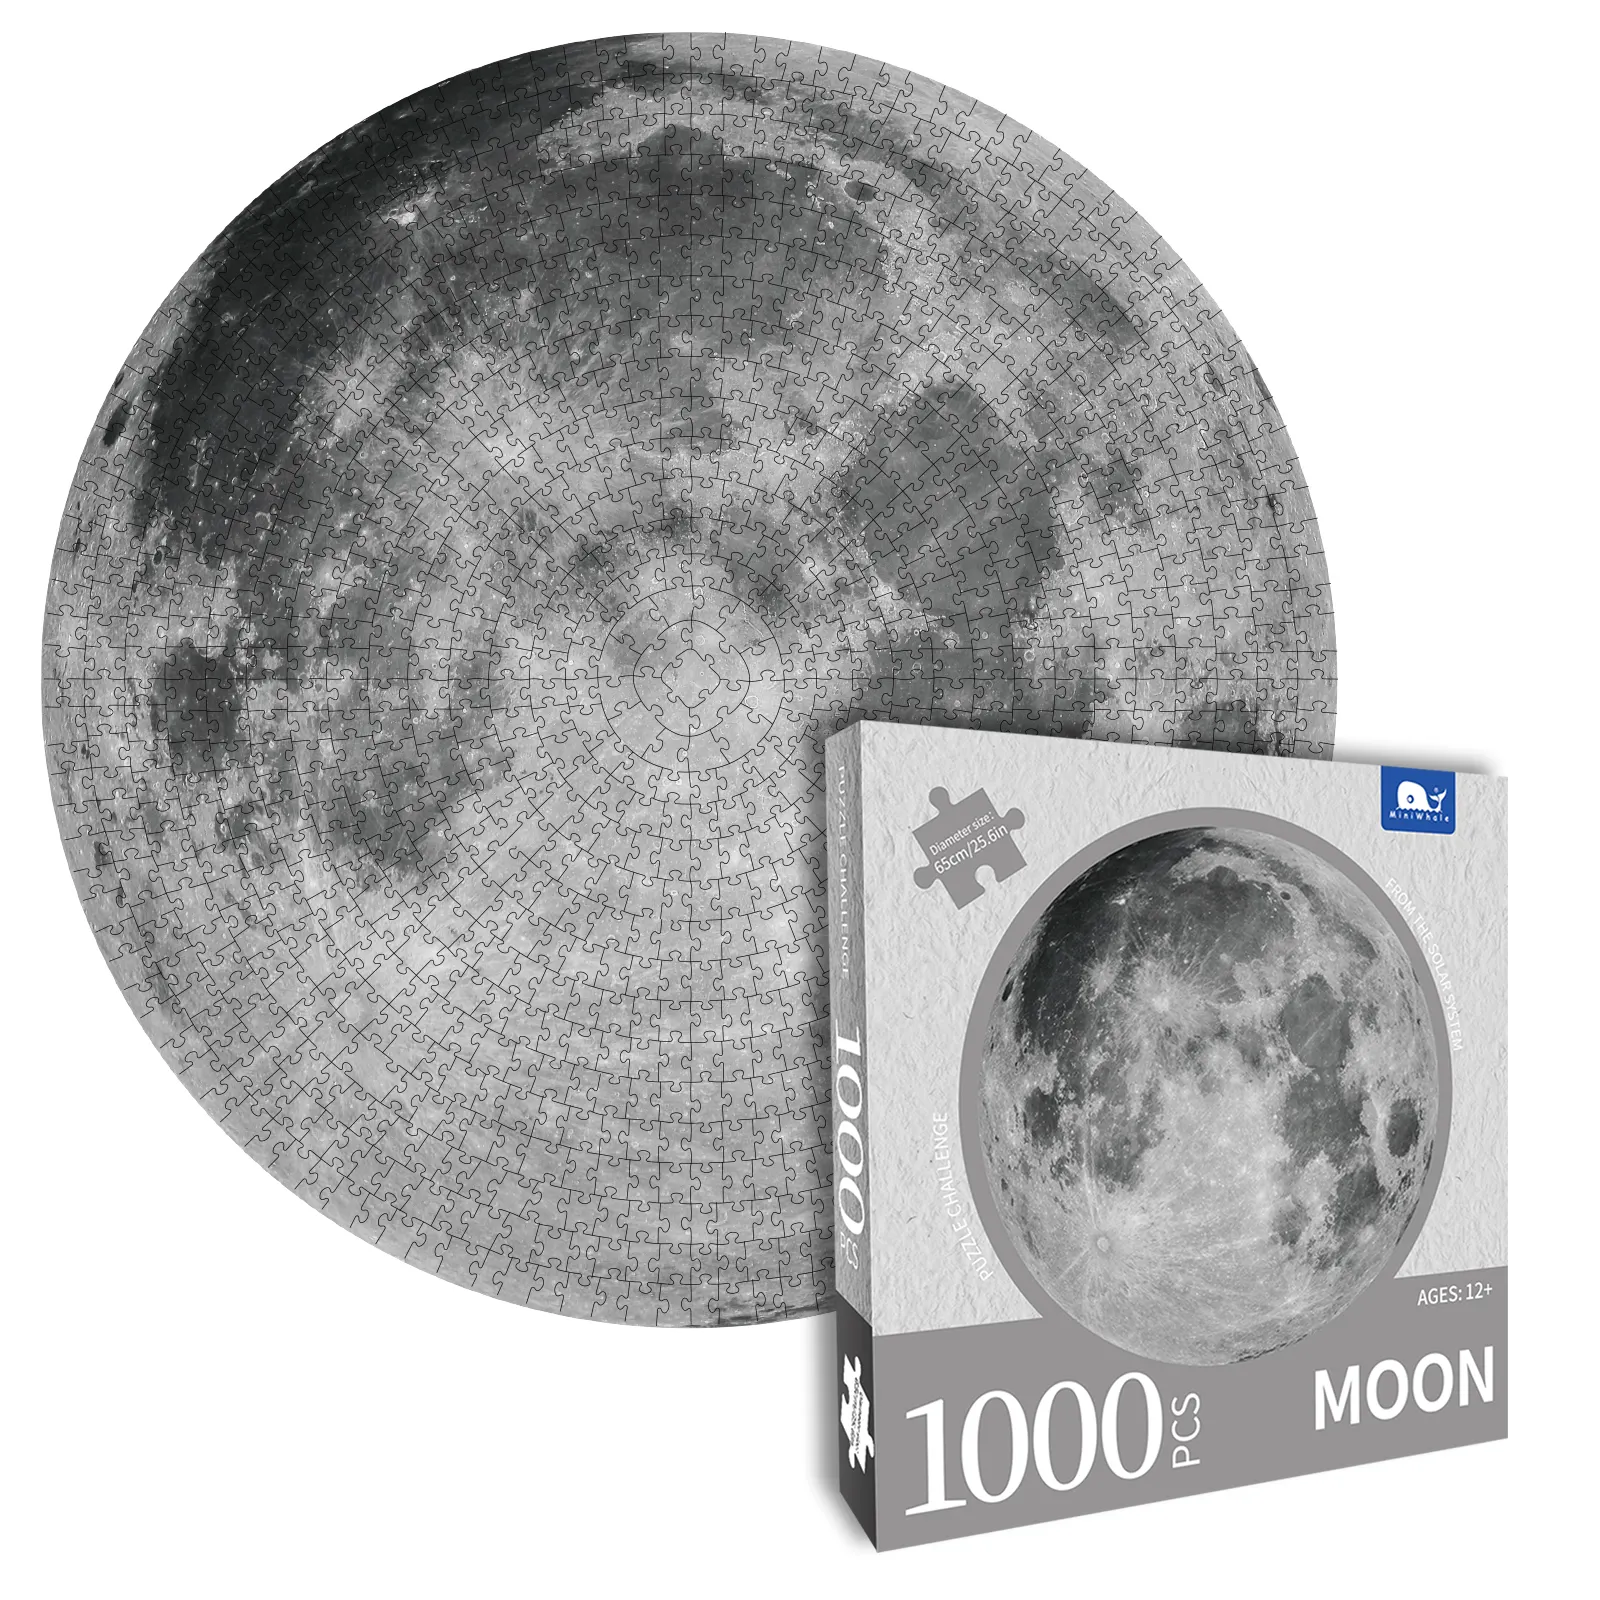 Rompecabezas redondo de 1000 piezas para adultos, juguete de rompecabezas de Luna y sol personalizado, muestra gratis